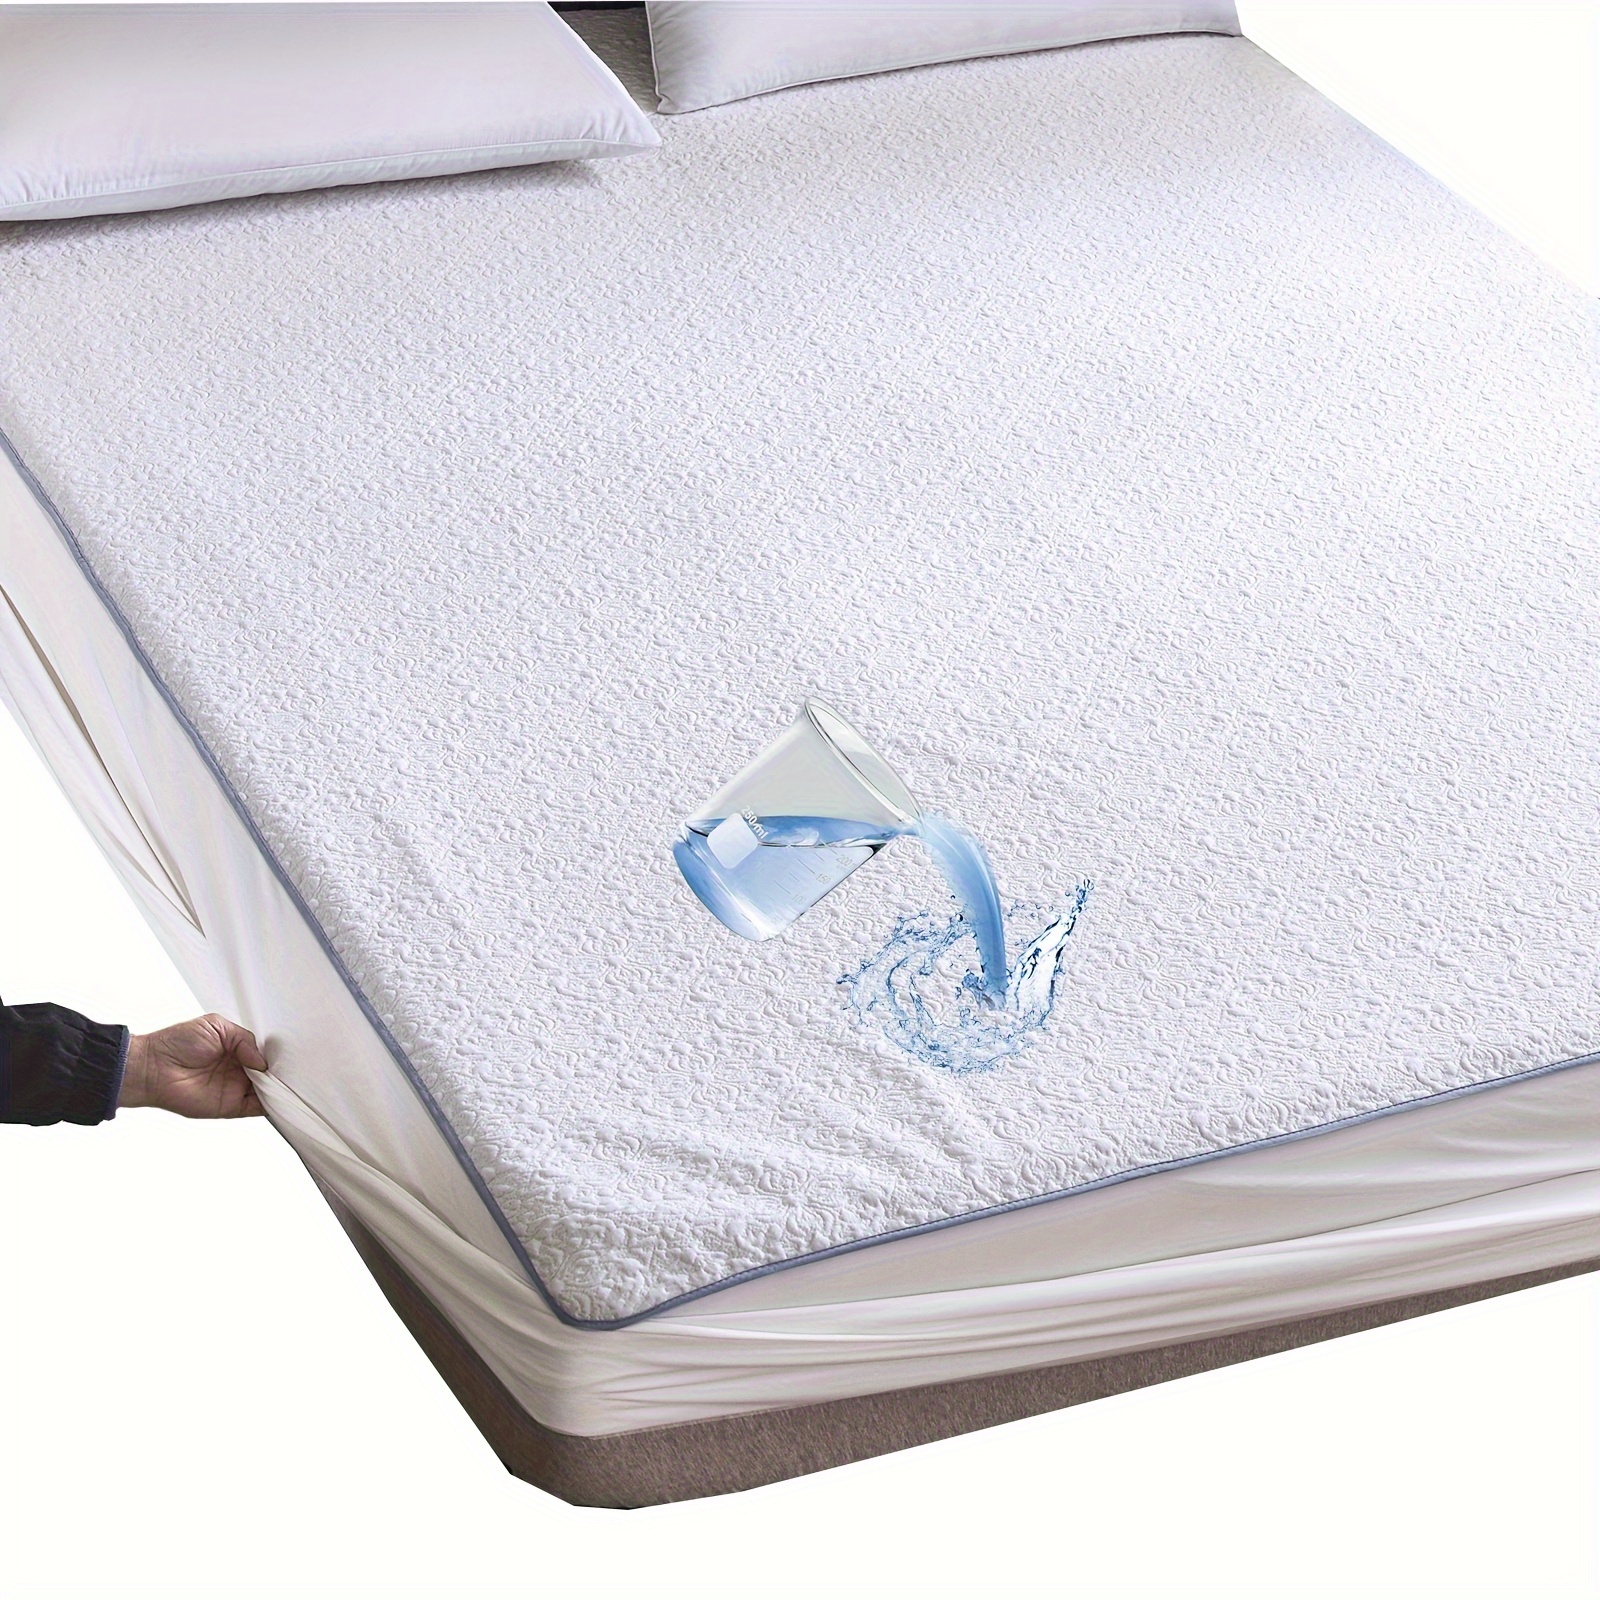 Esta funda de colchón impermeable es hipoalergénica y silenciosa